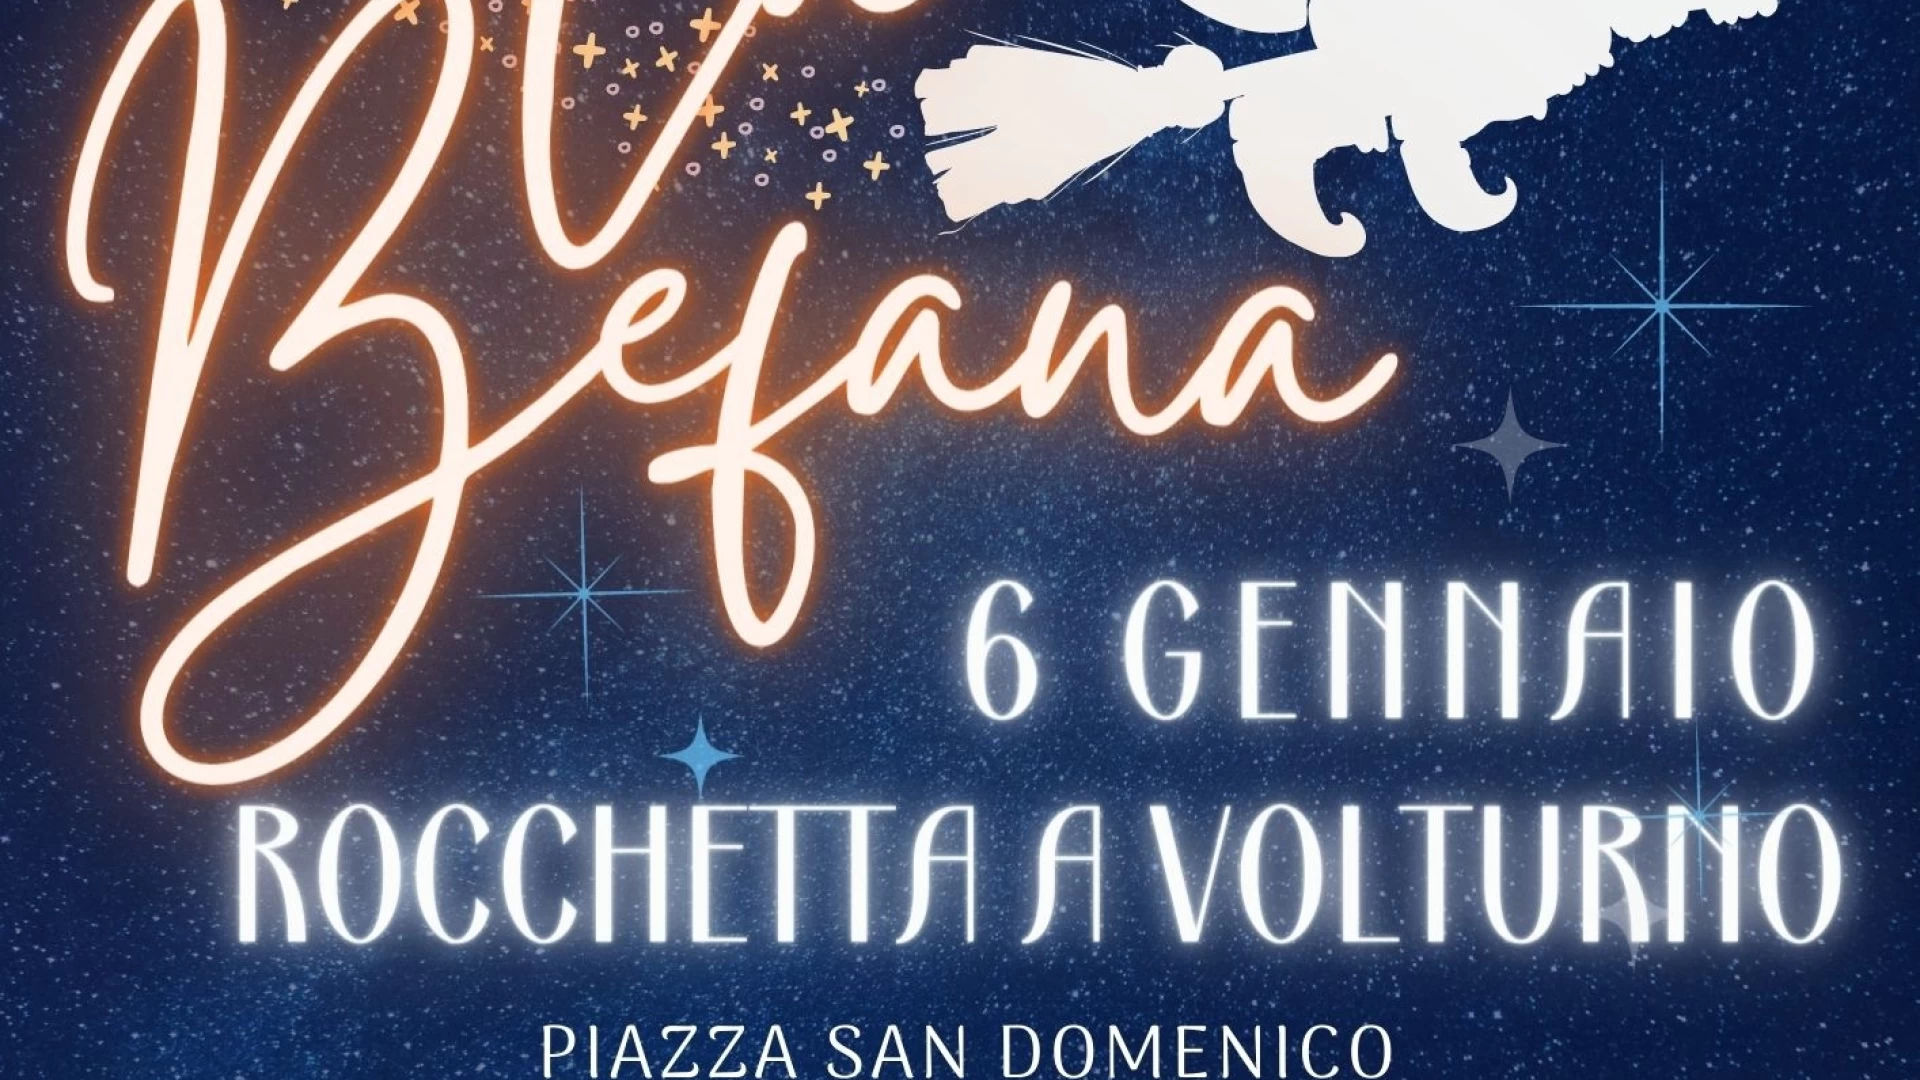 Rocchetta a Volturno: in Piazza San Domenico arriva la Befana per la gioia dei bambini.